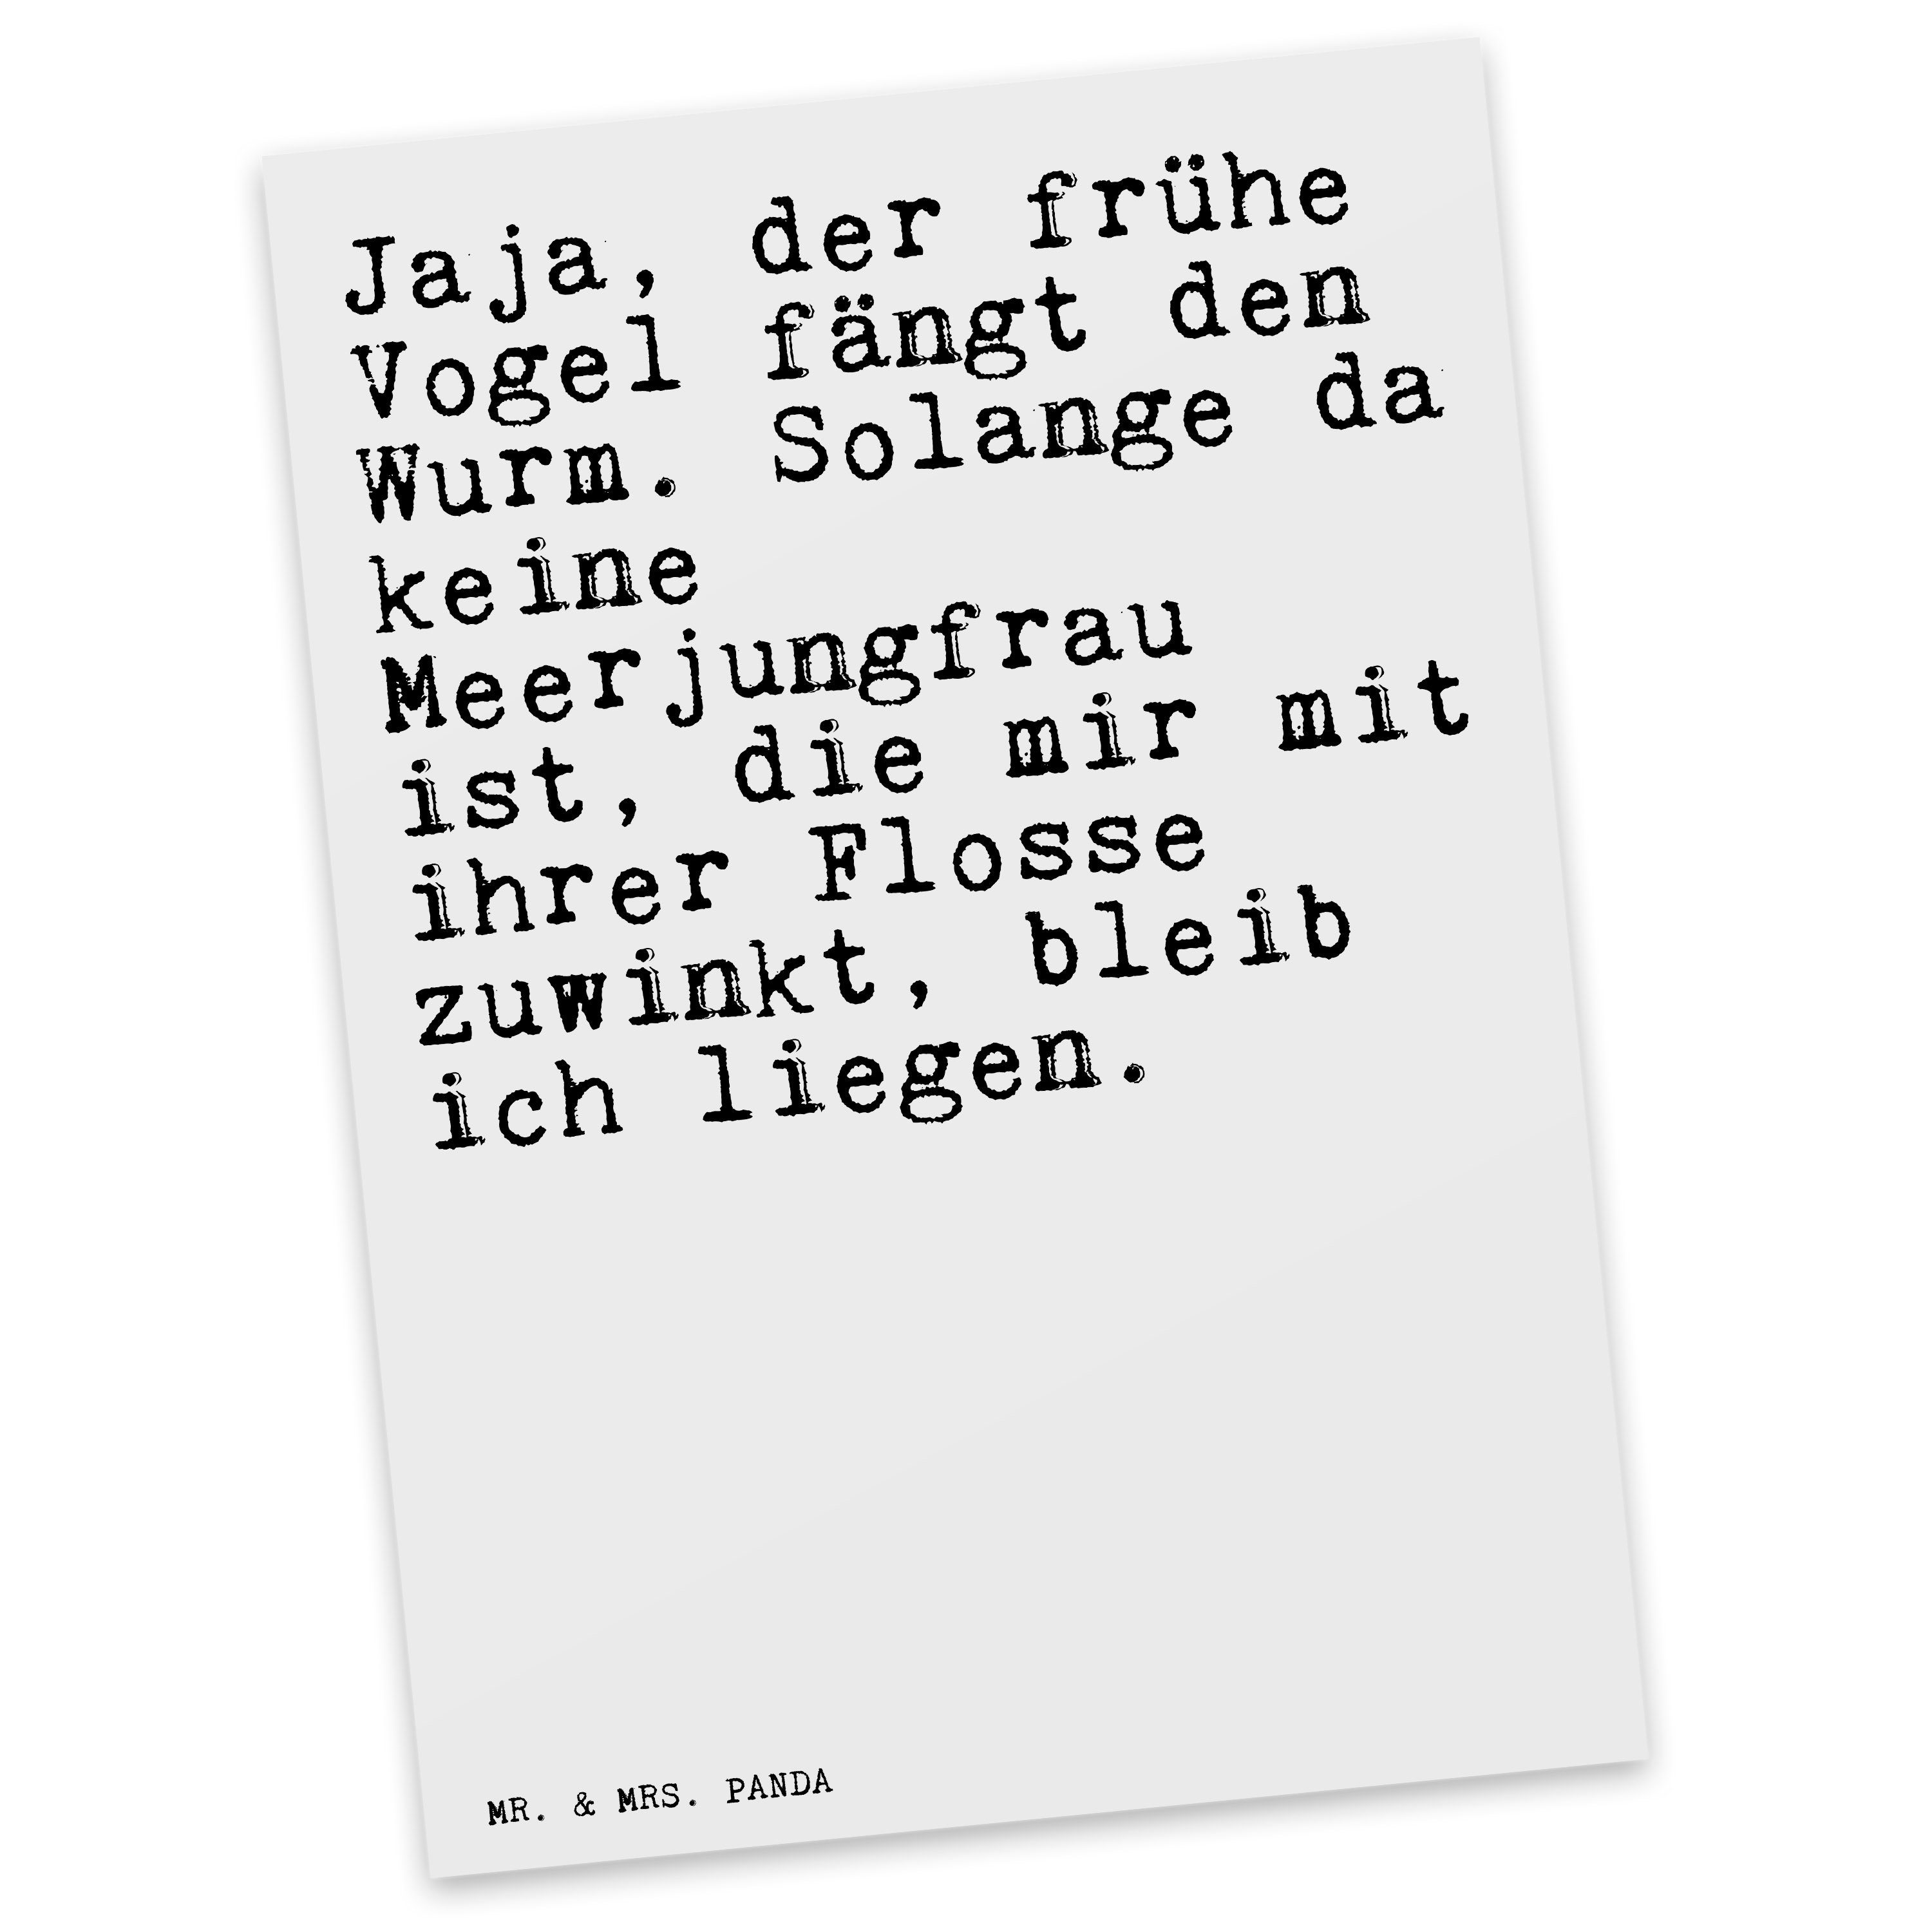 Mr. & Postkarte - der Geschenk, Spruch, - Jaja, Panda Vogel... frühe Weiß Mrs. Zit meerjungfrau